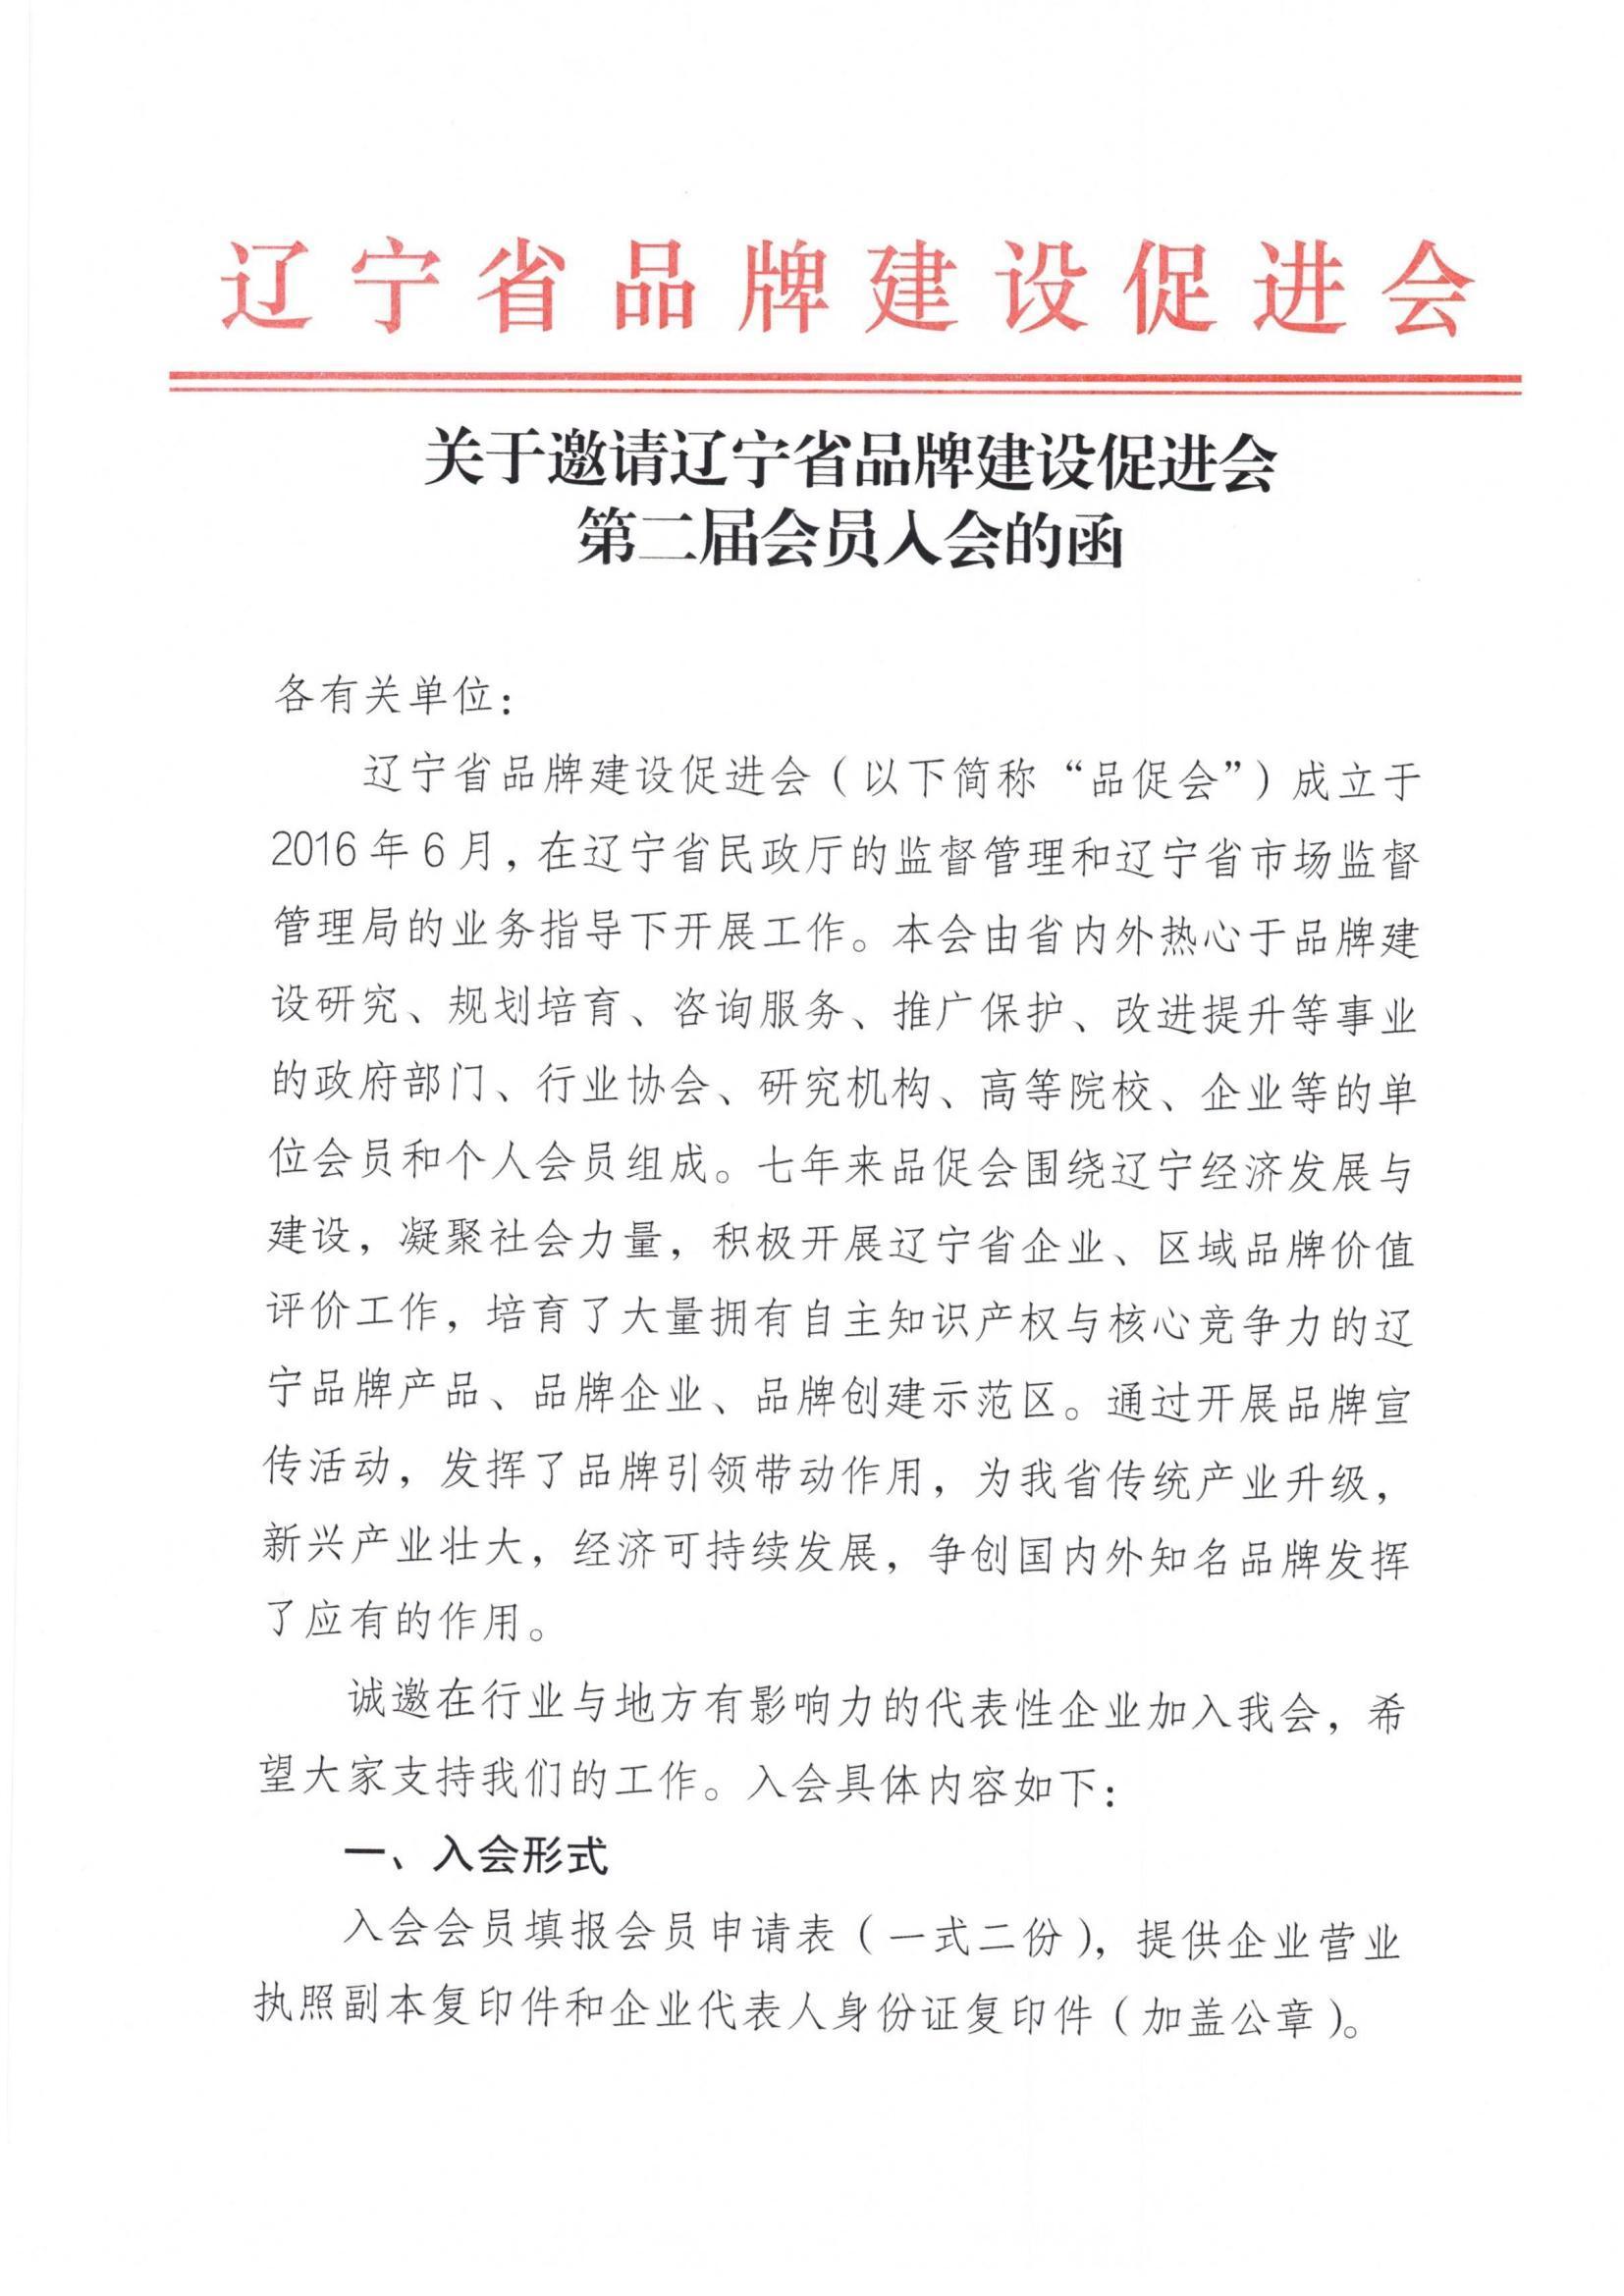 关于邀请辽宁省品牌建设促进会 第二届会员入会的函